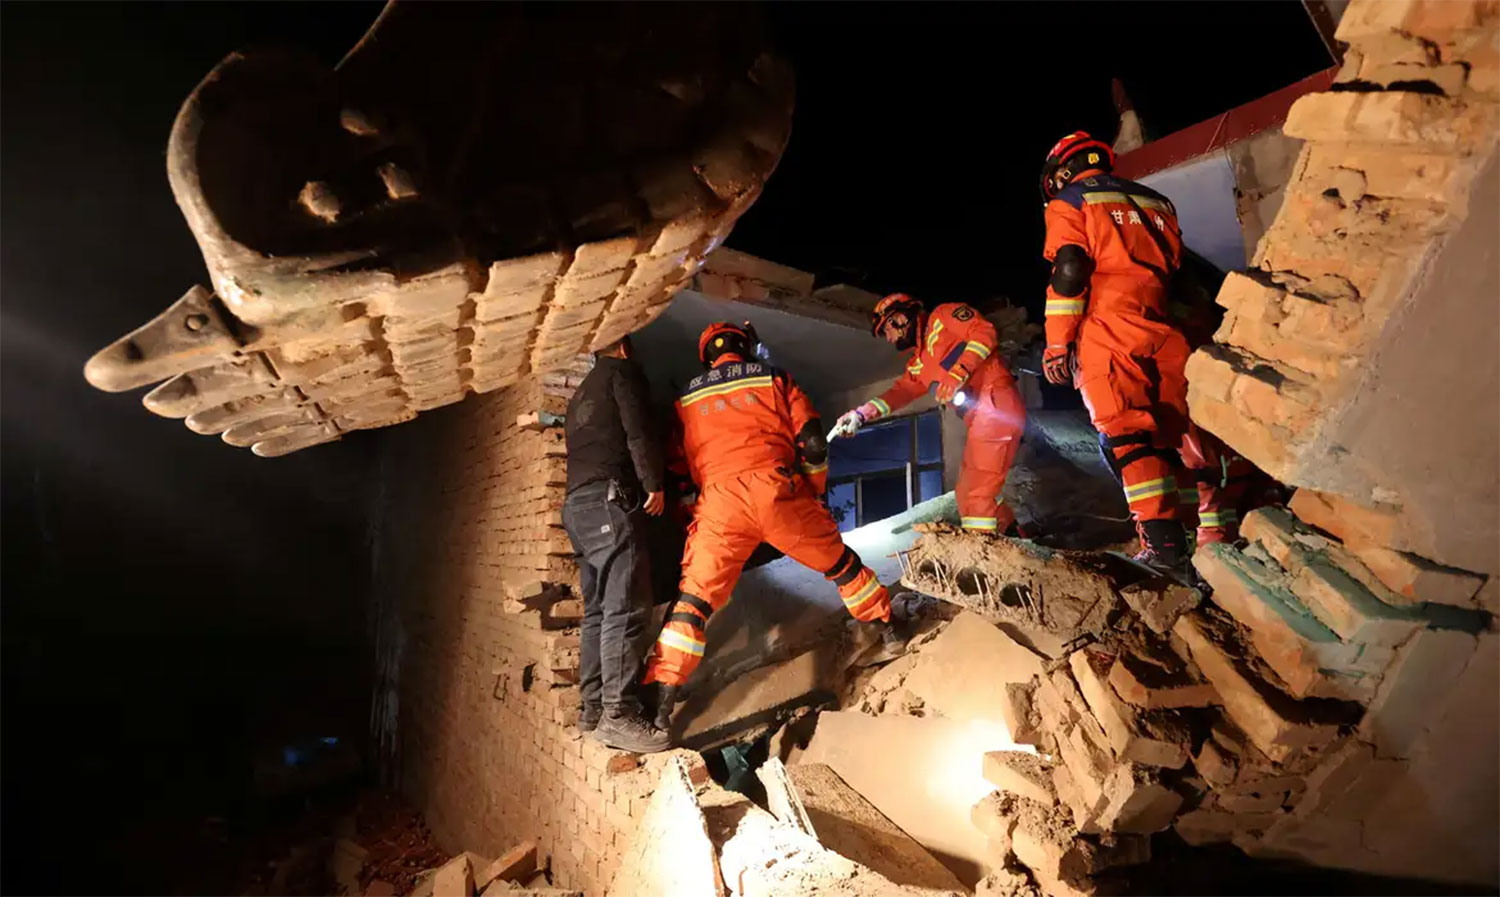 Terremoto na China mata pelo menos 126 pessoas | Mundo & História